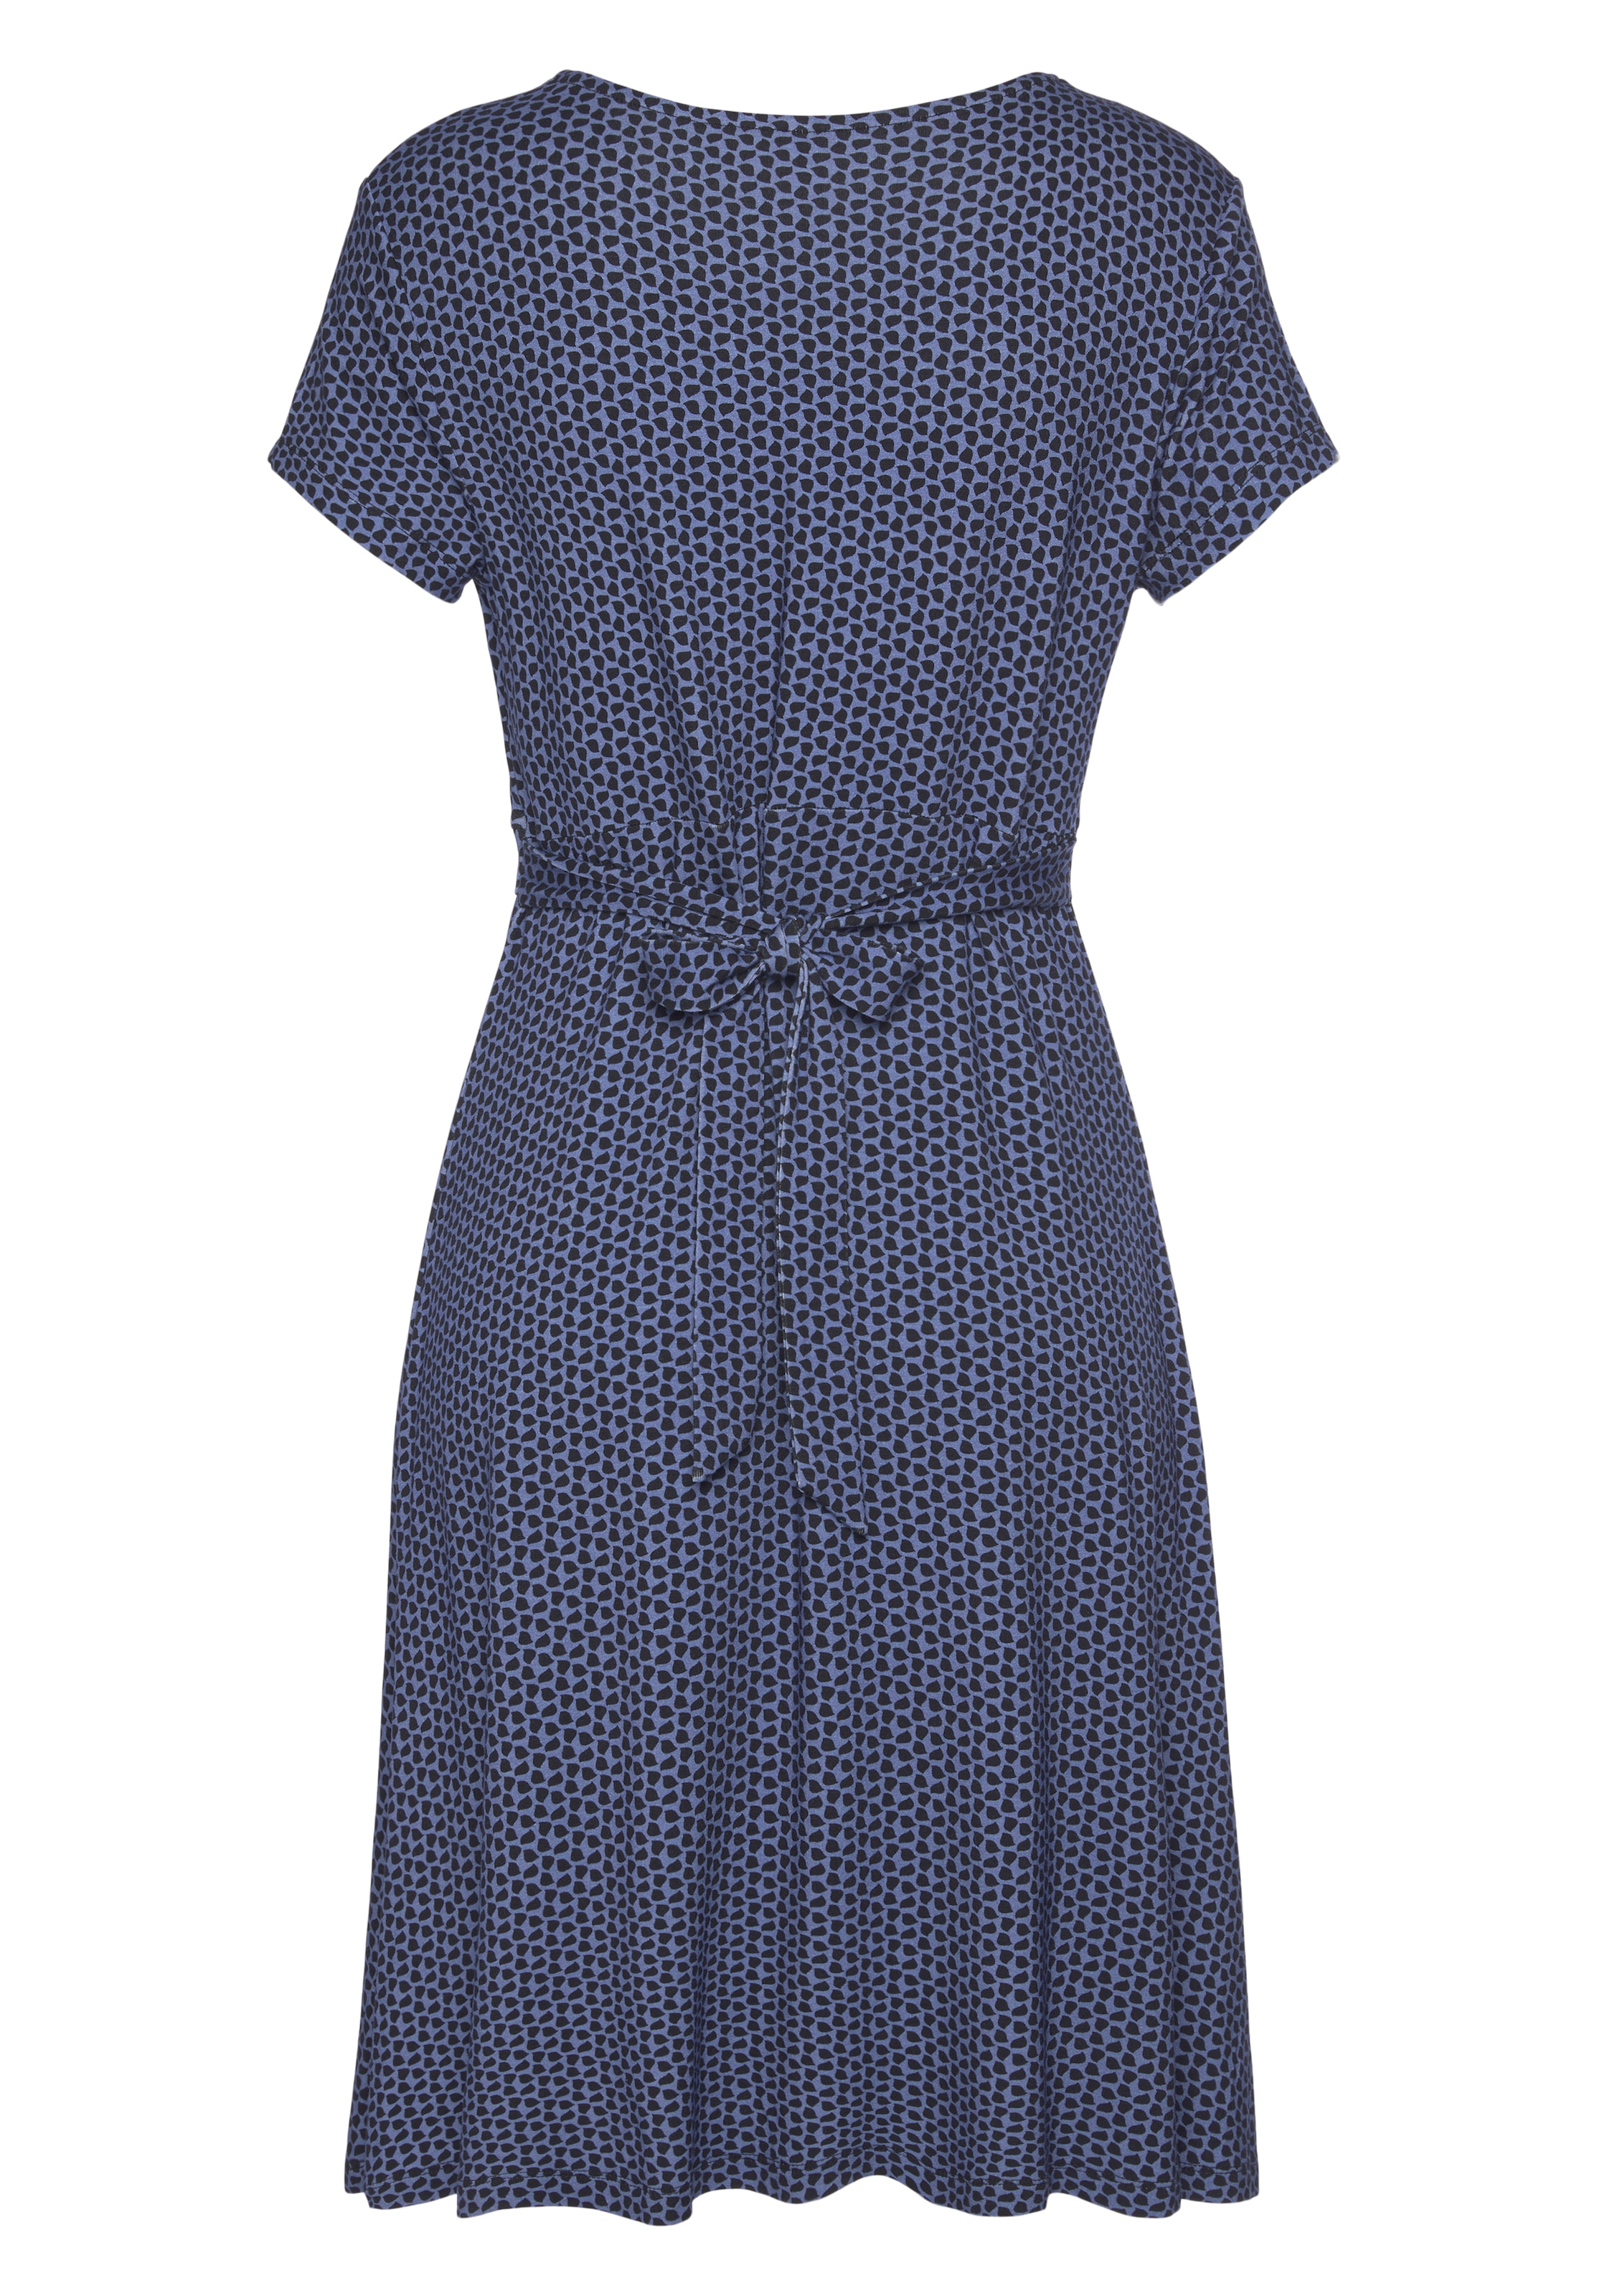 Vivance Jerseykleid, mit geometrischem Print | BAUR online kaufen